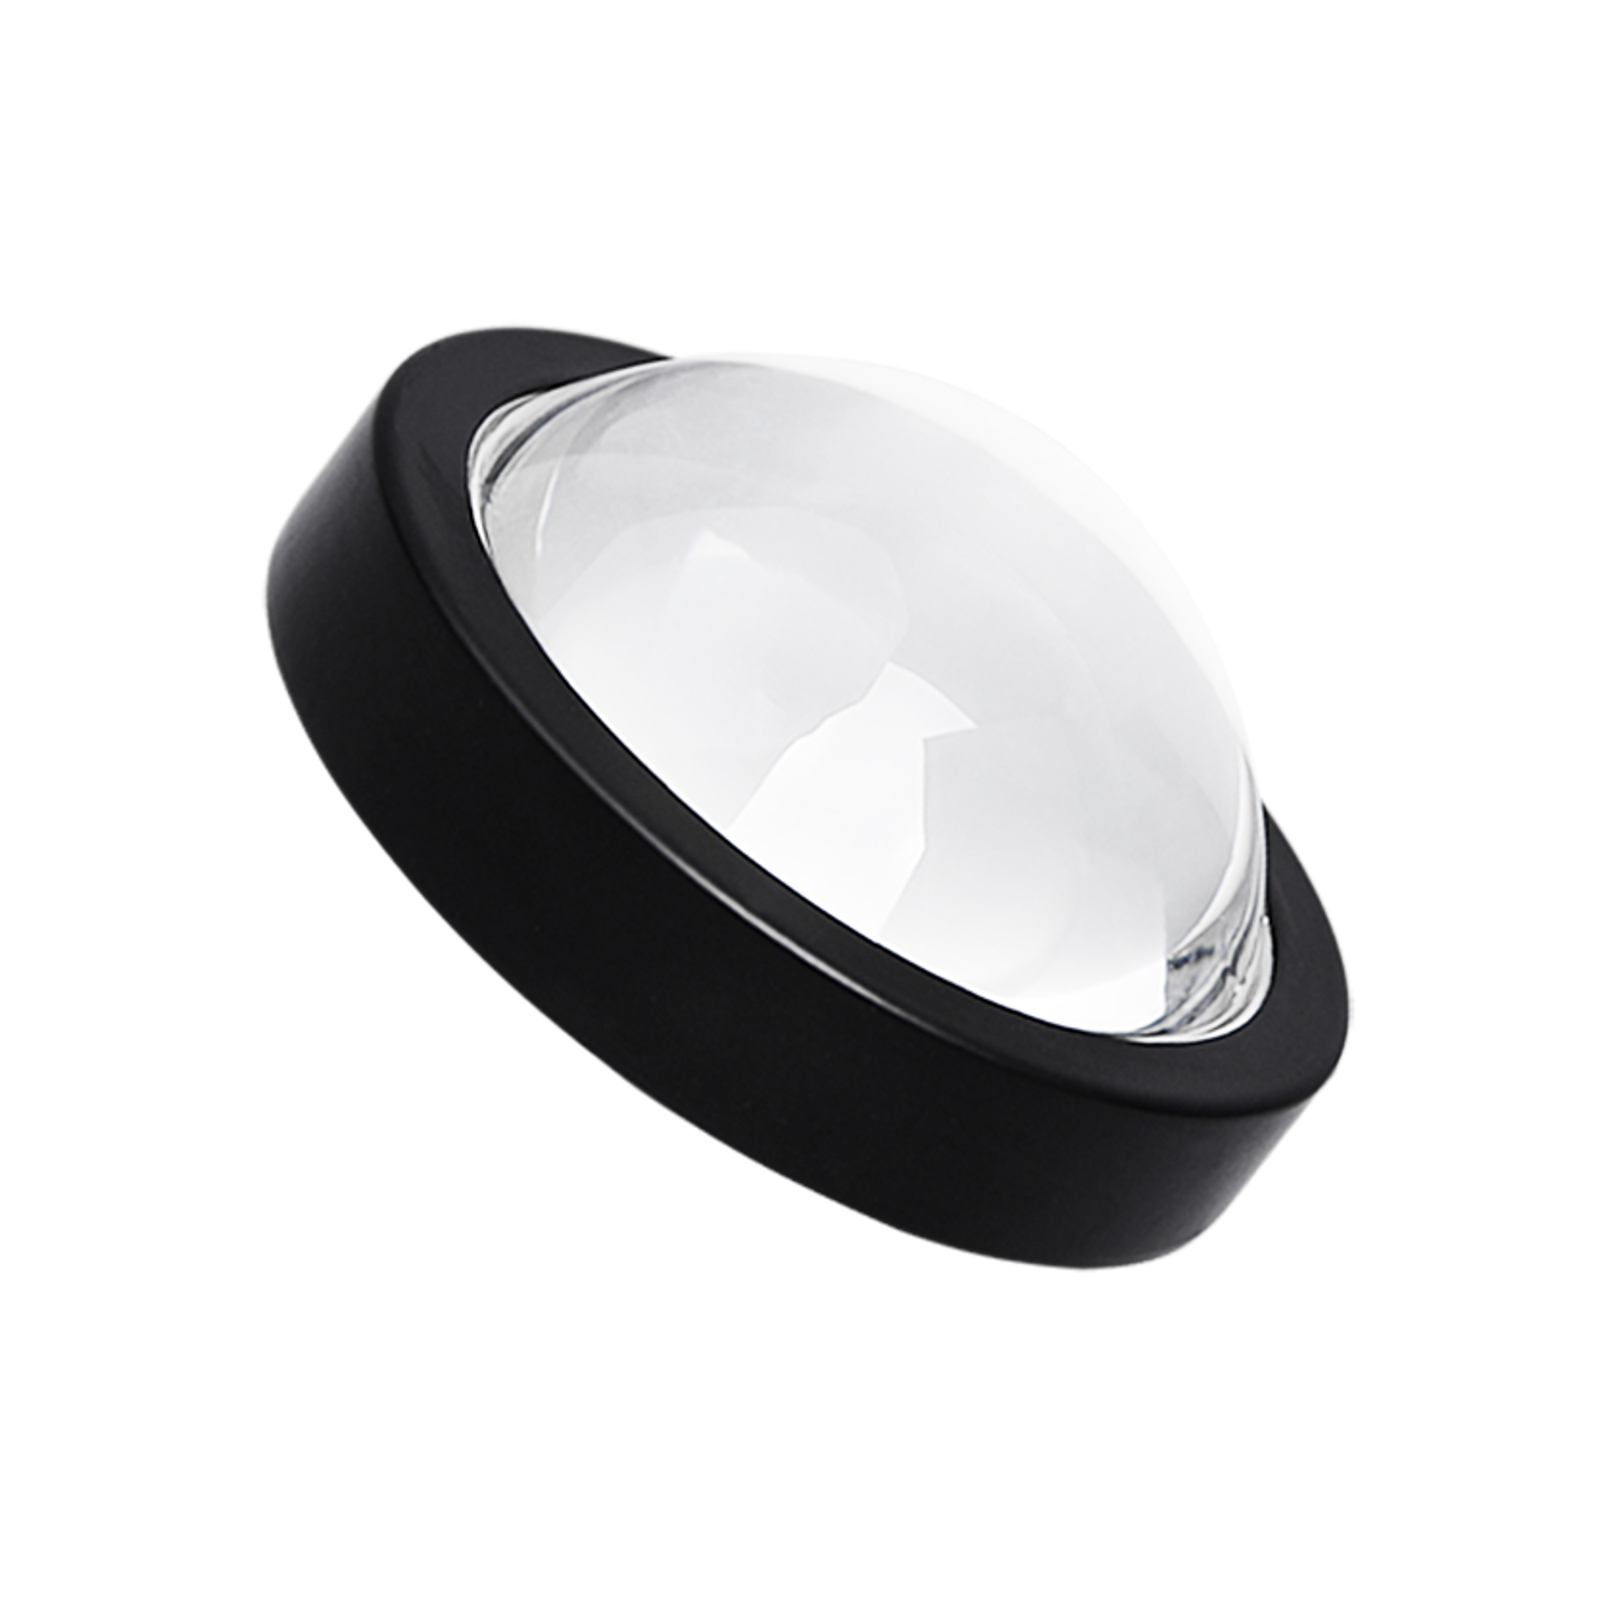 Lindby downlight Jyla, black, 4200 K, 3-bulb, lens, GX53